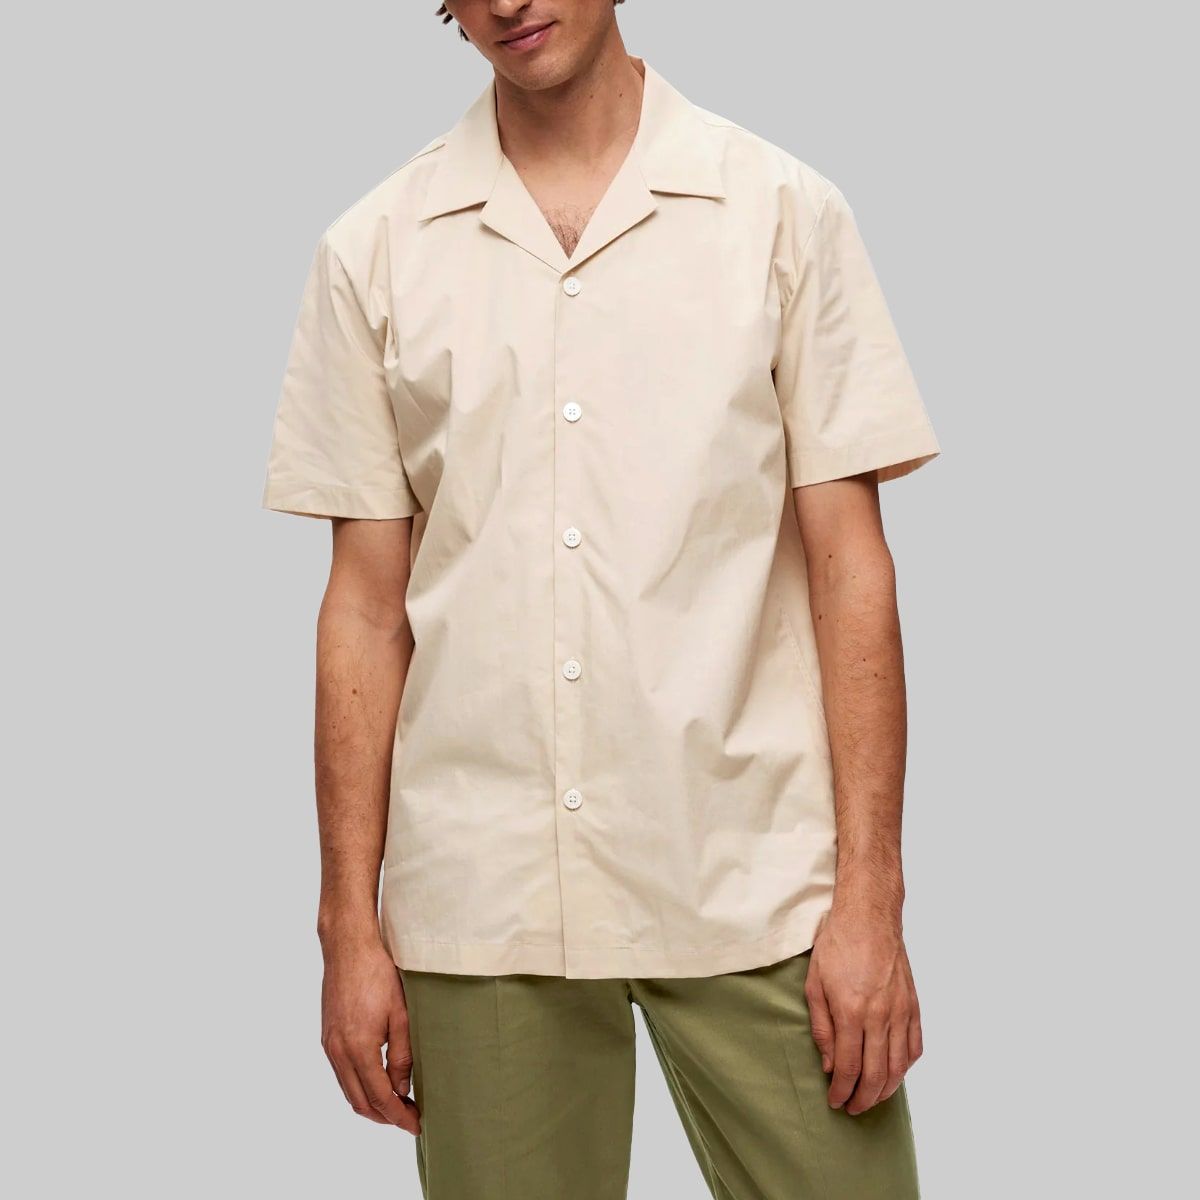 Cuban Collar Beige Shirt